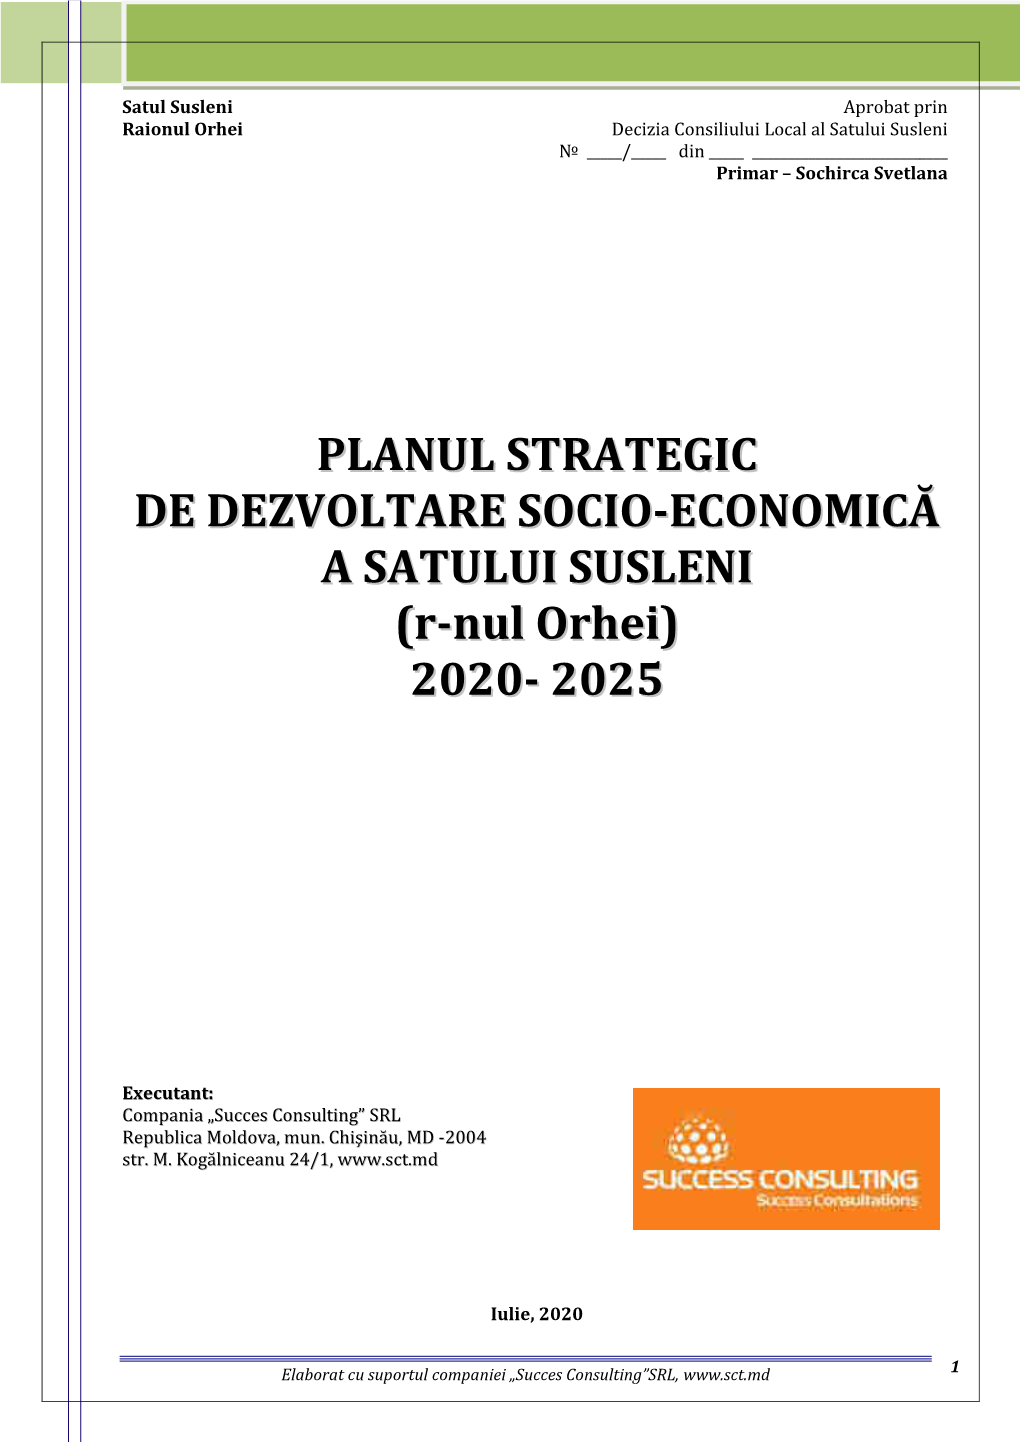 Planul Strategic De Dezvoltare Socio-Economică a Satului Susleni, Raionul Orhei